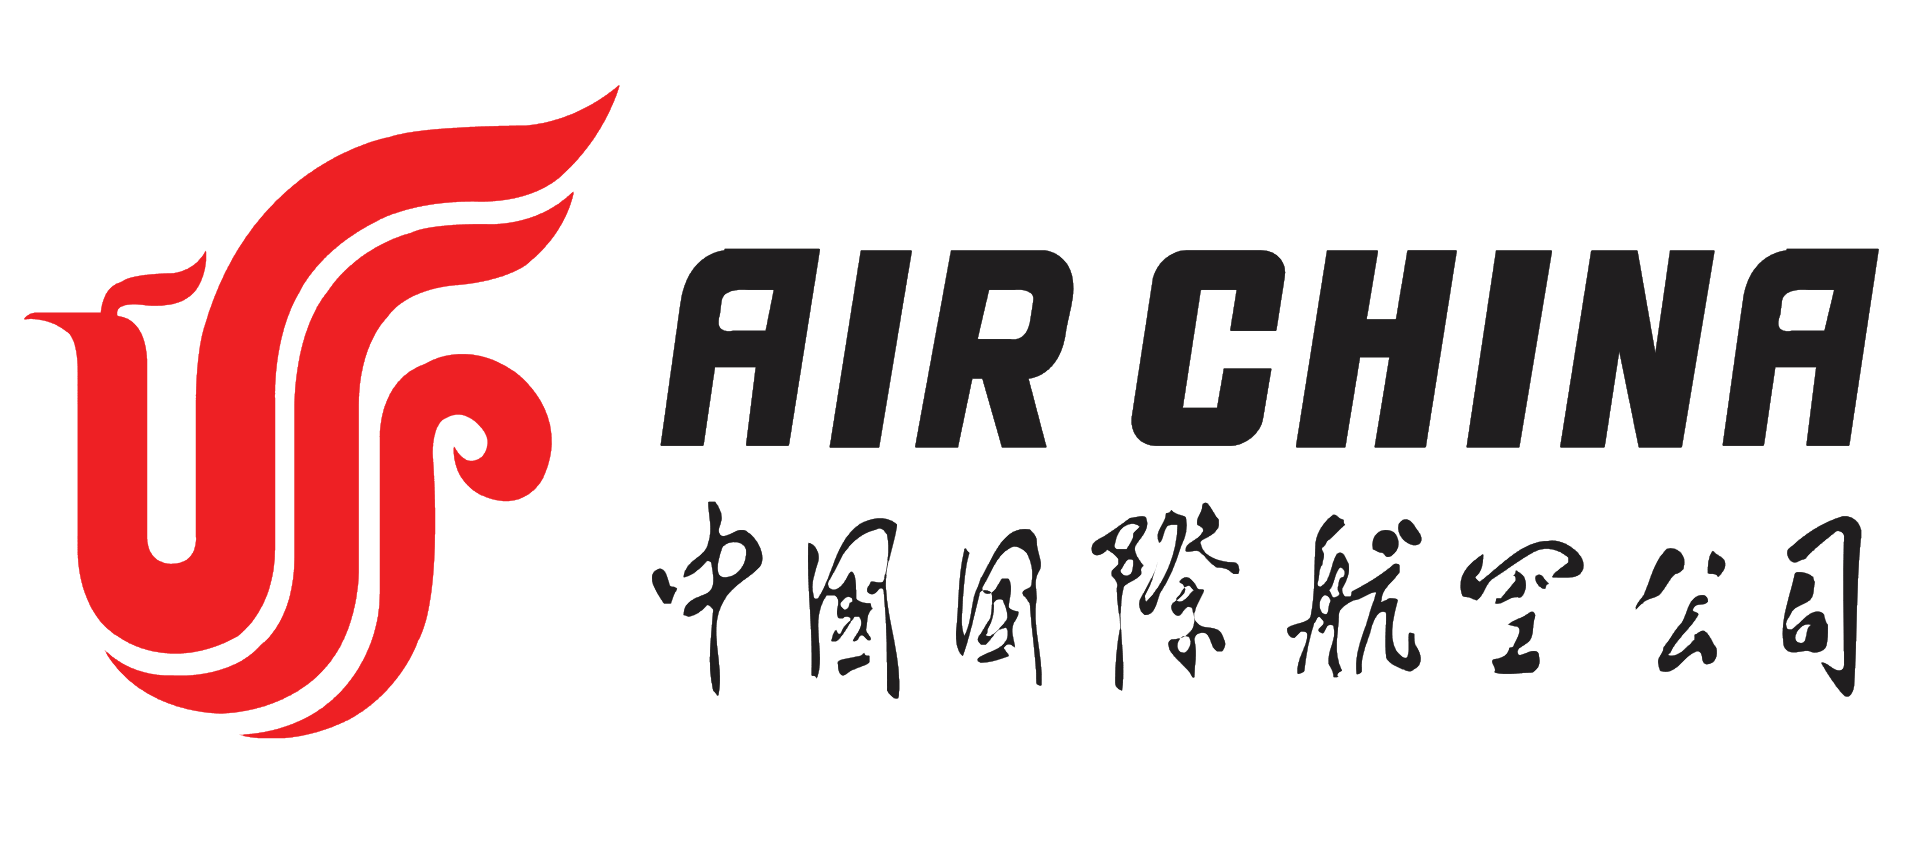 Air China logo, logotype